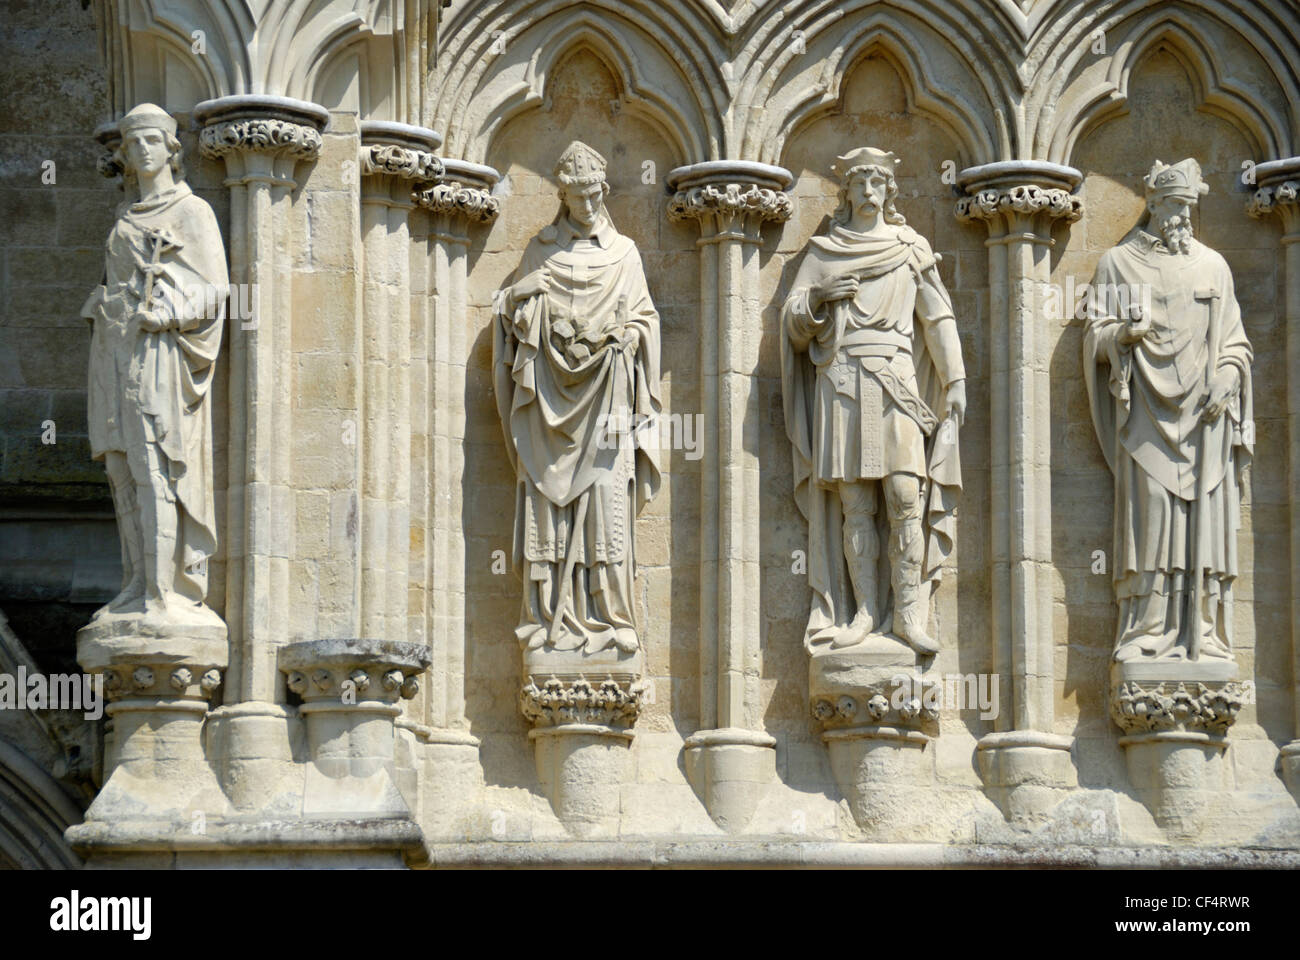 Statuen von Heiligen und allegorischen Figuren auf der Außenseite der Kathedrale von Salisbury. Stockfoto